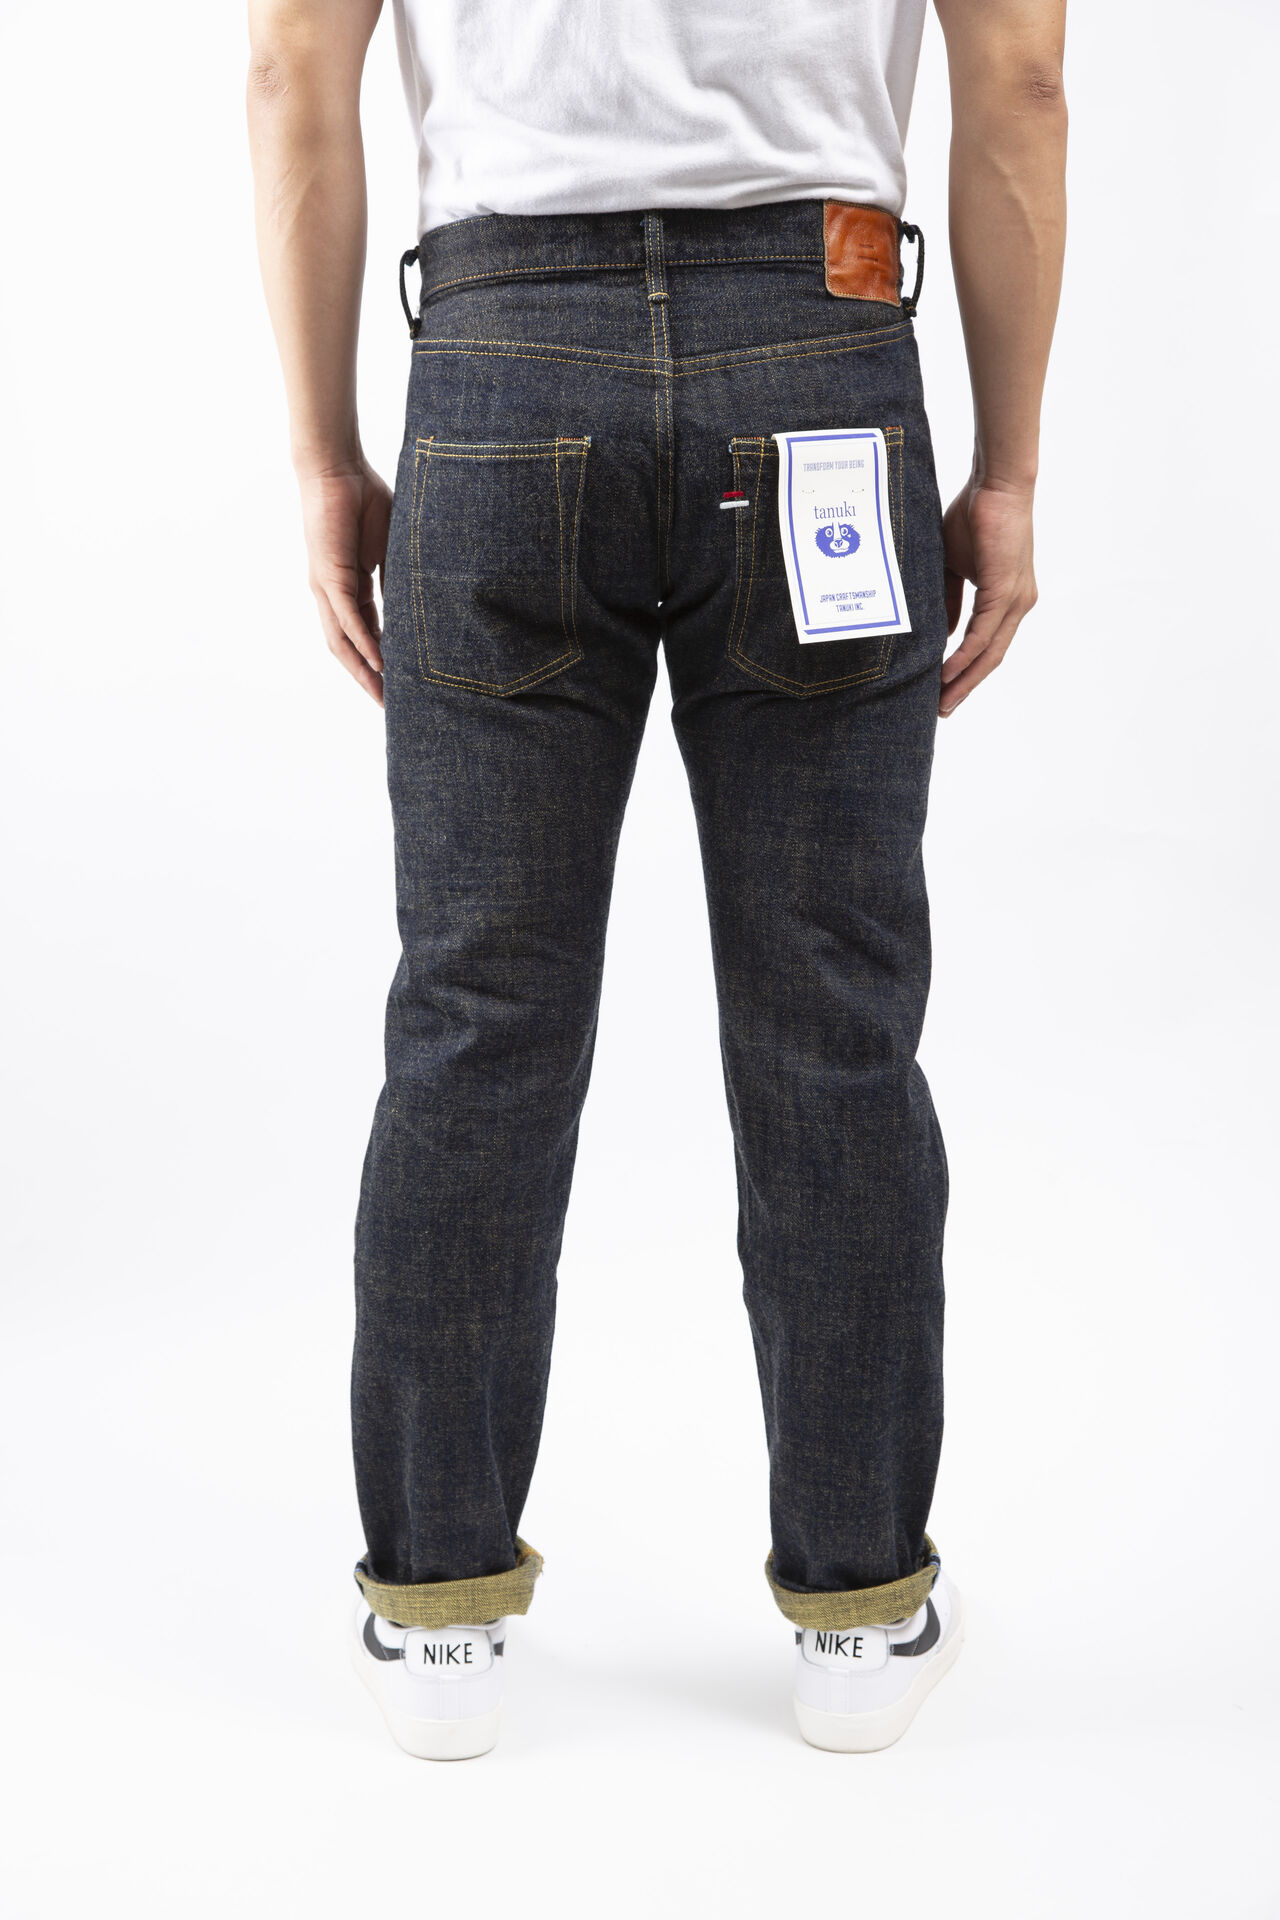 Slim Straight SOGA 15oz Jeans,, large image number 3